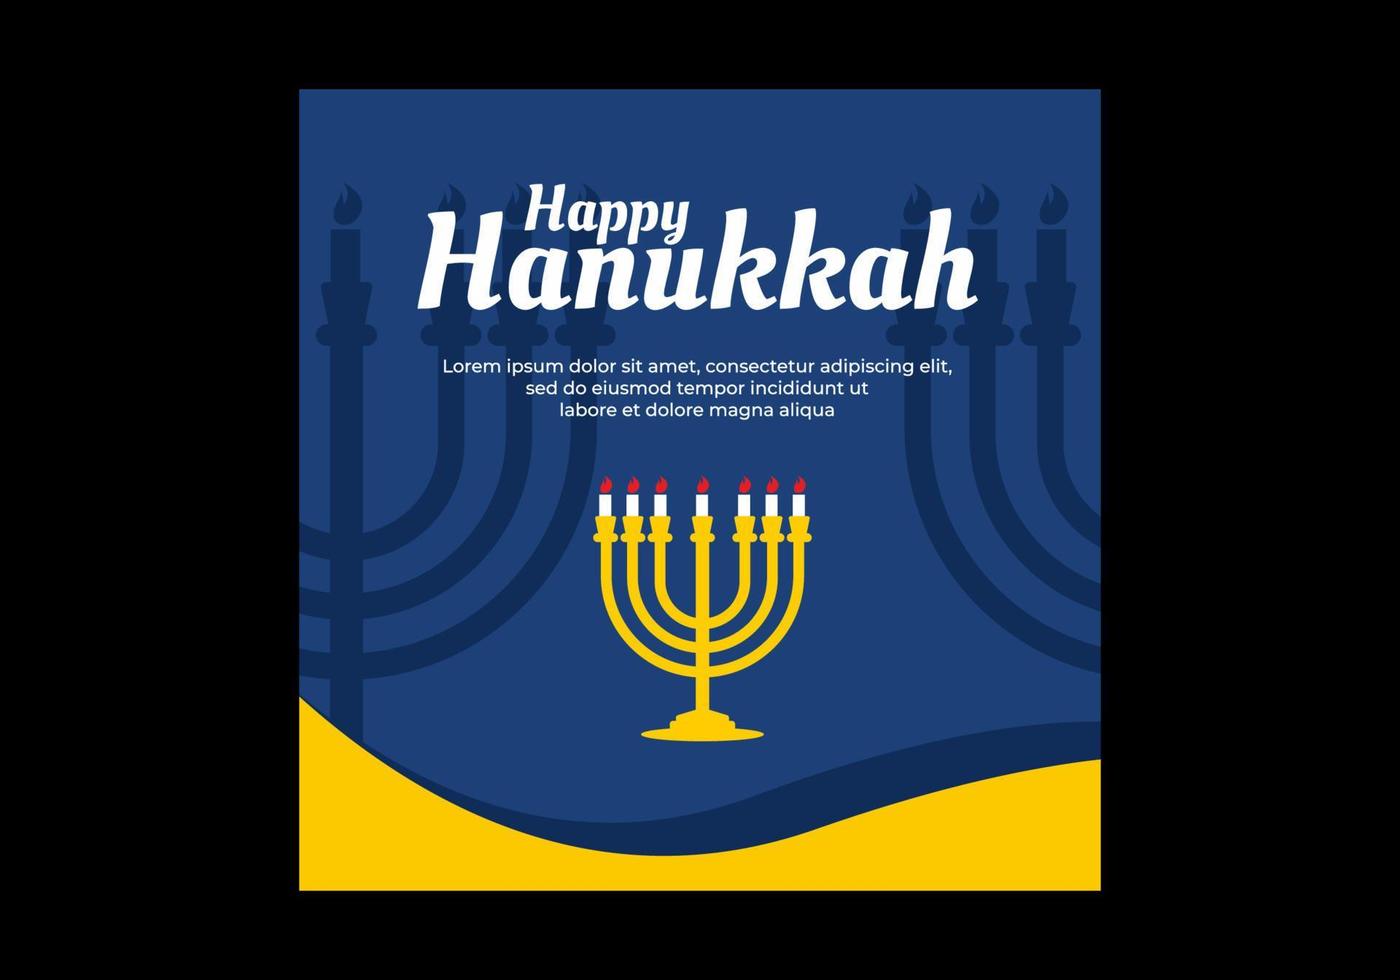 diseño de banner de anuncios de redes sociales de evento de hanukkah vector